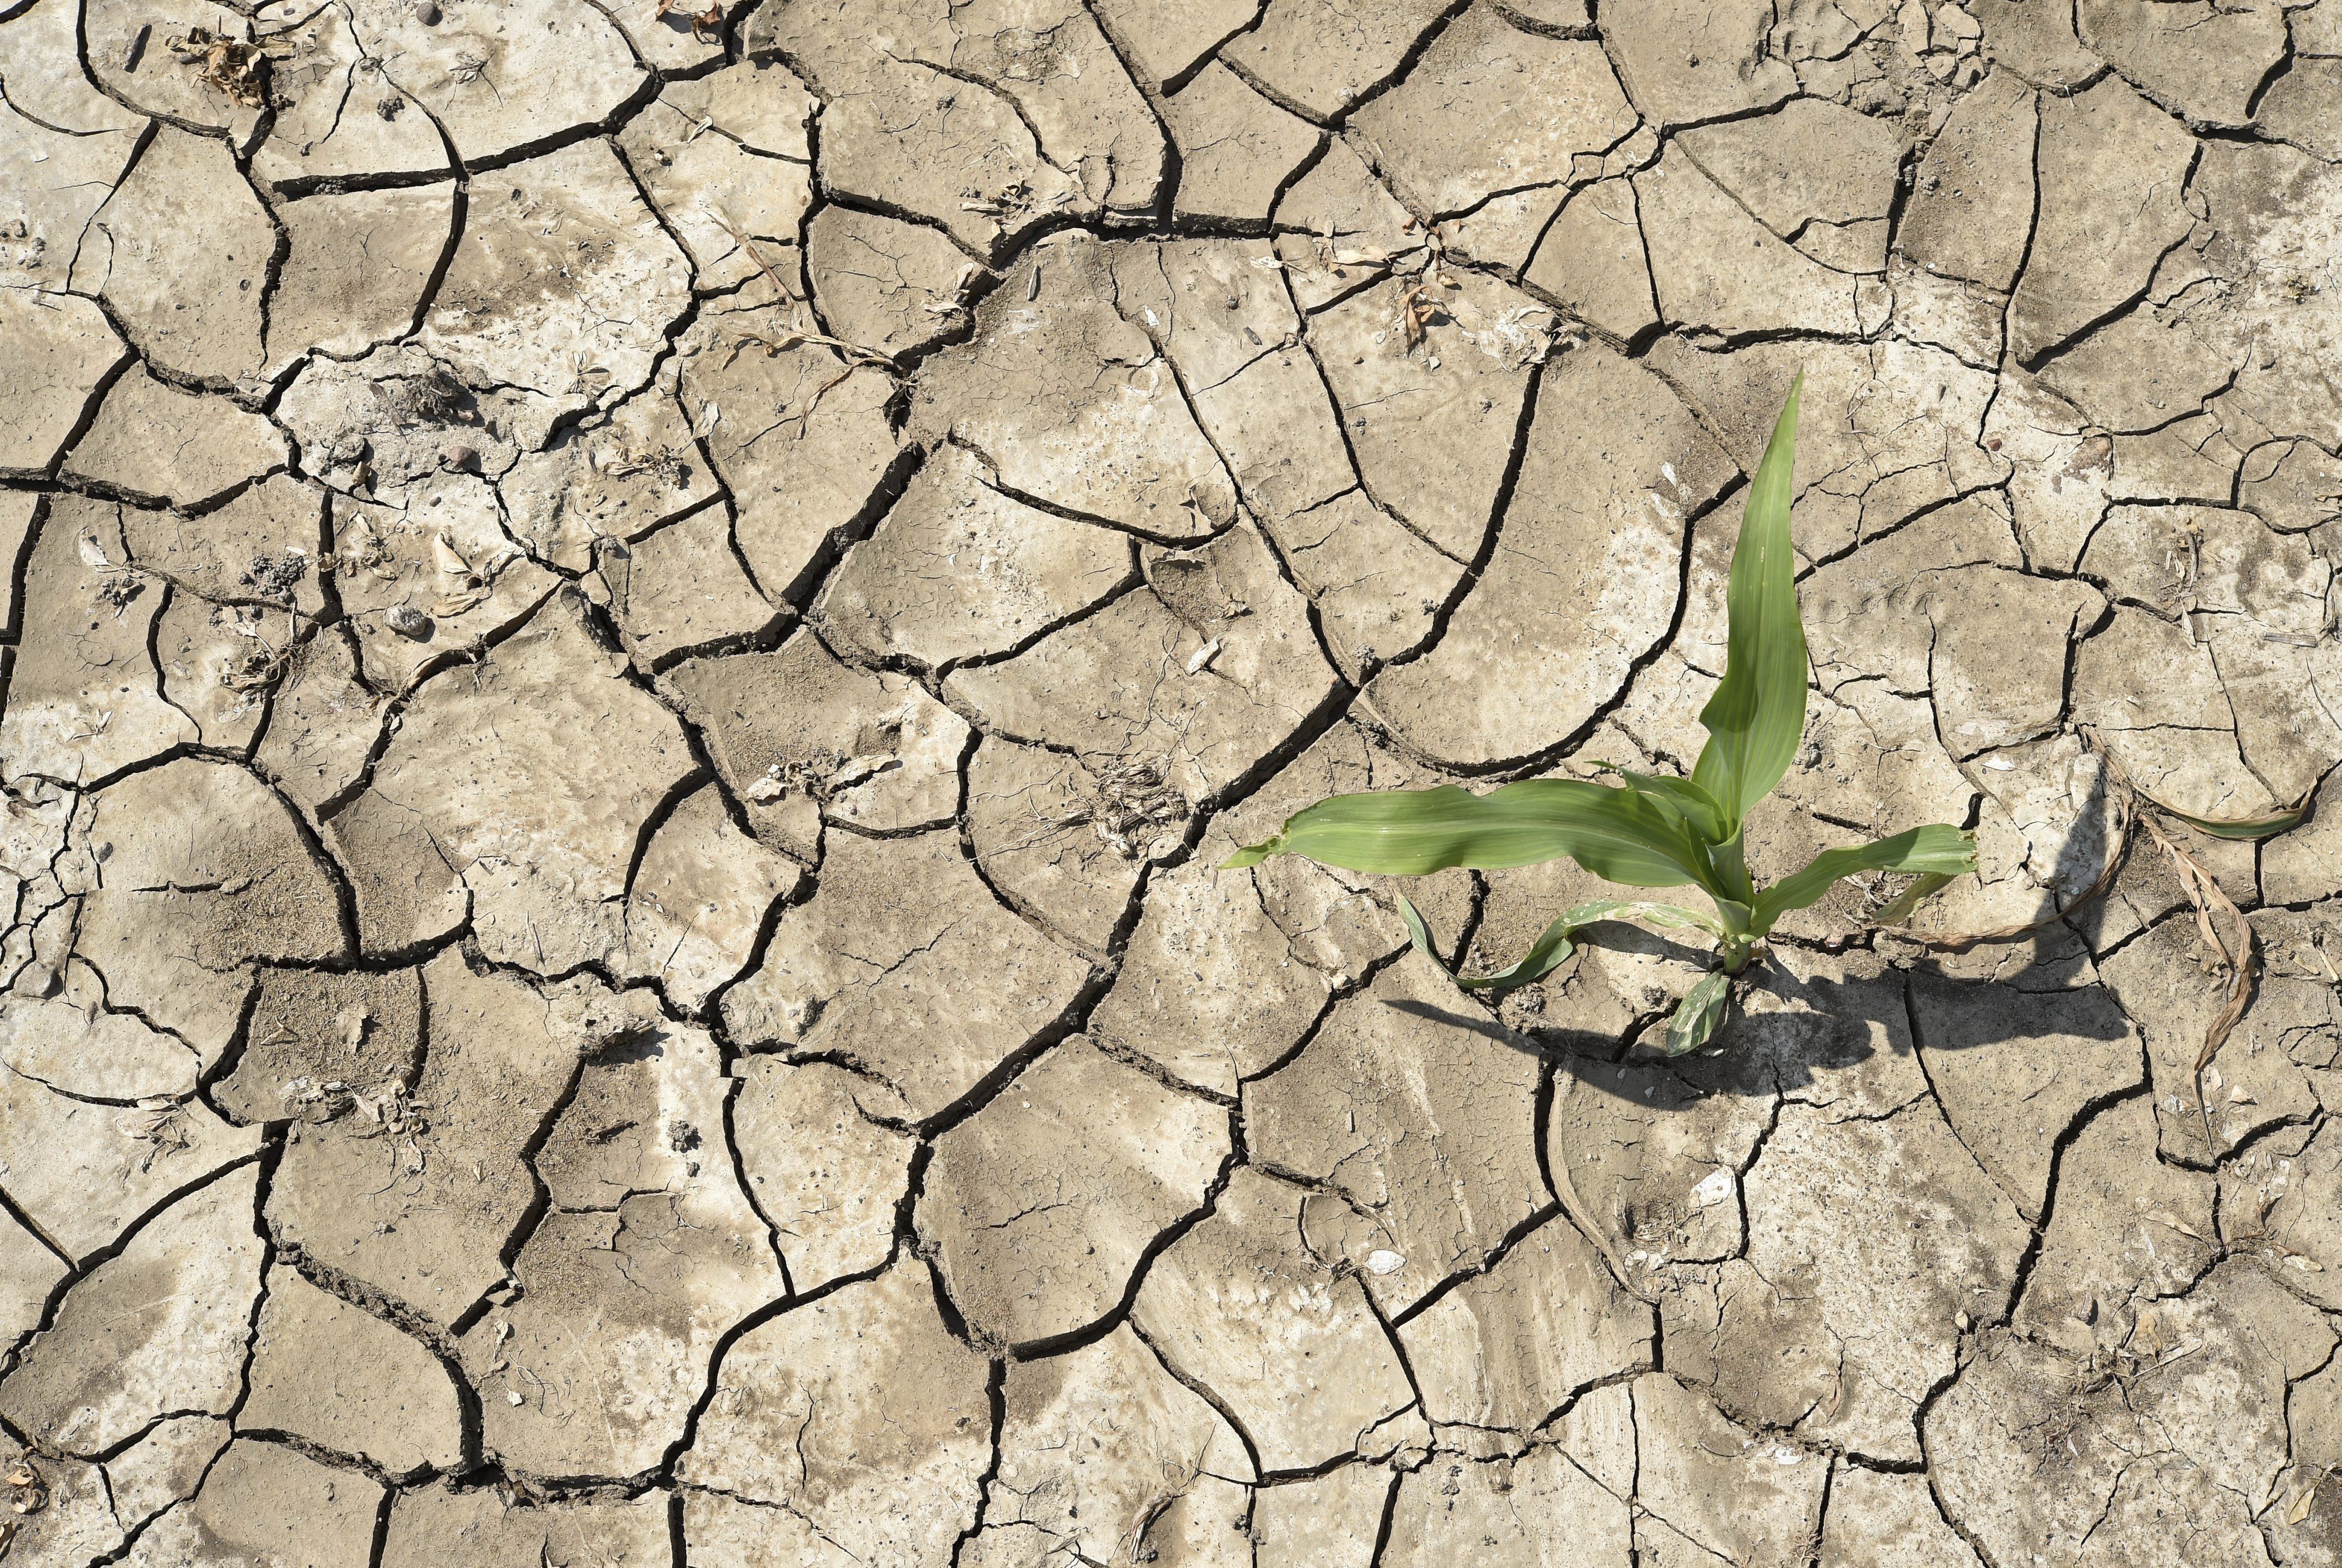 La menor evaporación provocada por la sequedad del suelo puede afectar el balance energético de la superficie terrestre, con implicaciones para la precipitación local y a favor del viento (EPA/PATRICK PLEUL)
